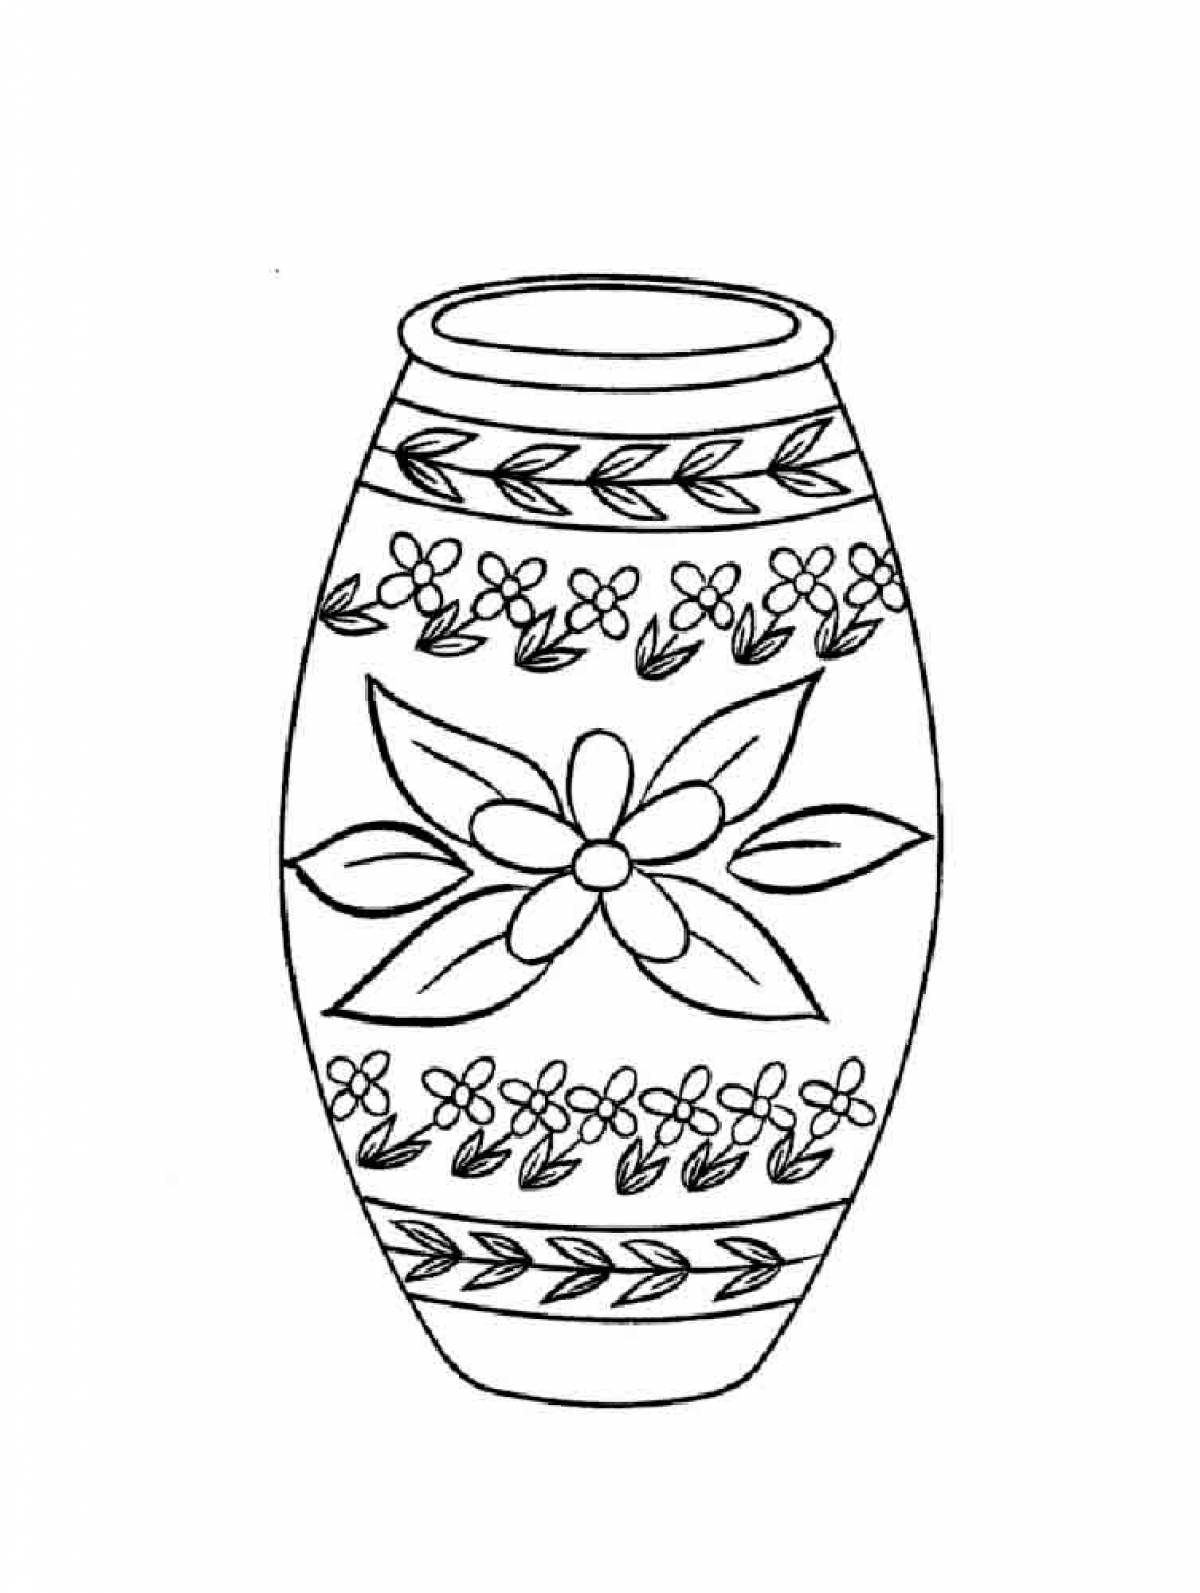 Изо 4 класс ваза. Раскраска вазы. Орнамент вазы. Рисунок вазы. Ваза с узорами раскраска.